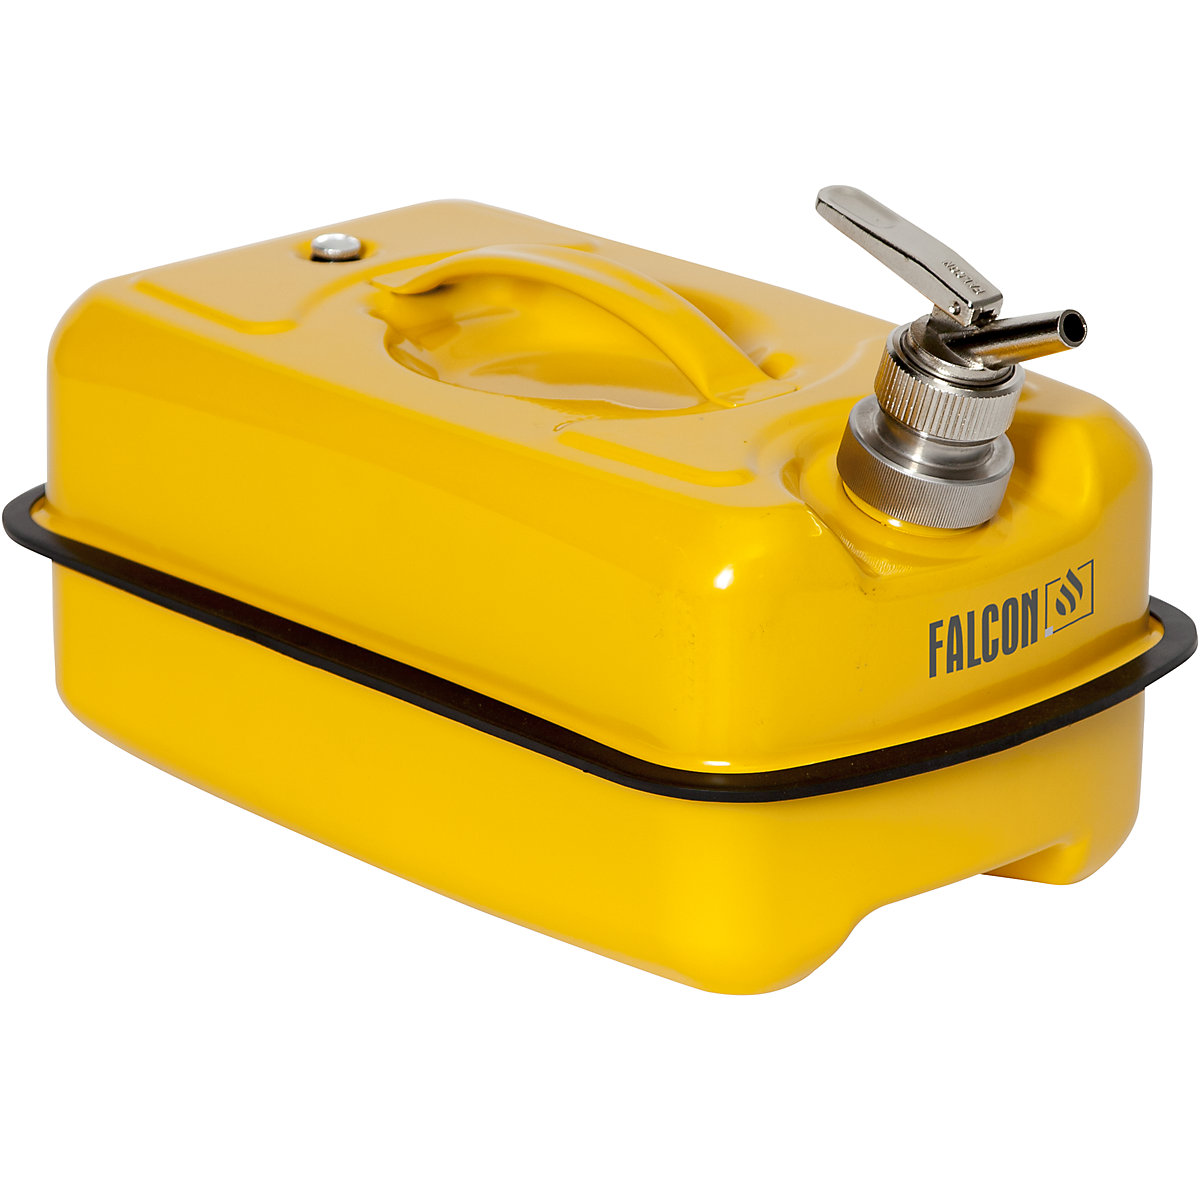 FALCON – Canistră de siguranță plată cu robinet pentru dozare fină (Imagine produs 7)